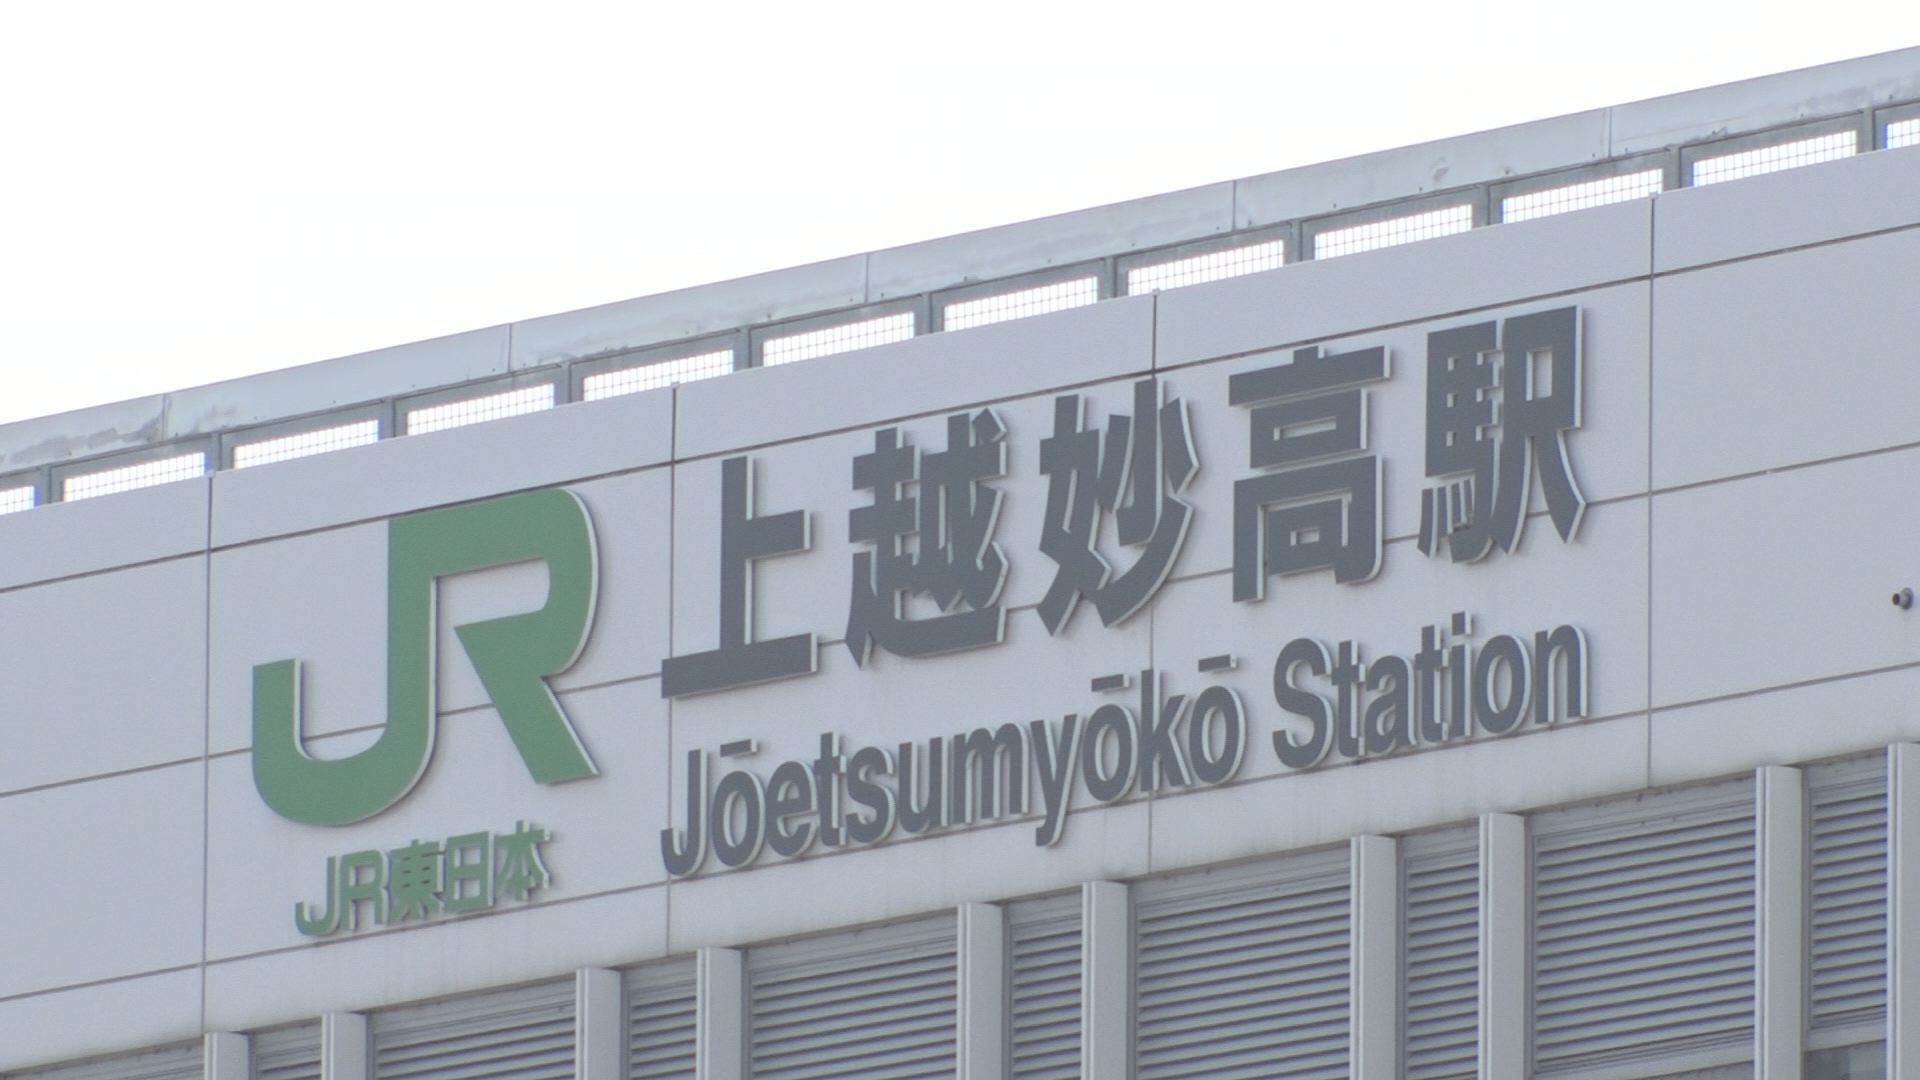 新幹線開業5周年イベント 多くが延期に 新型コロナ影響 ニュース 上越妙高タウン情報